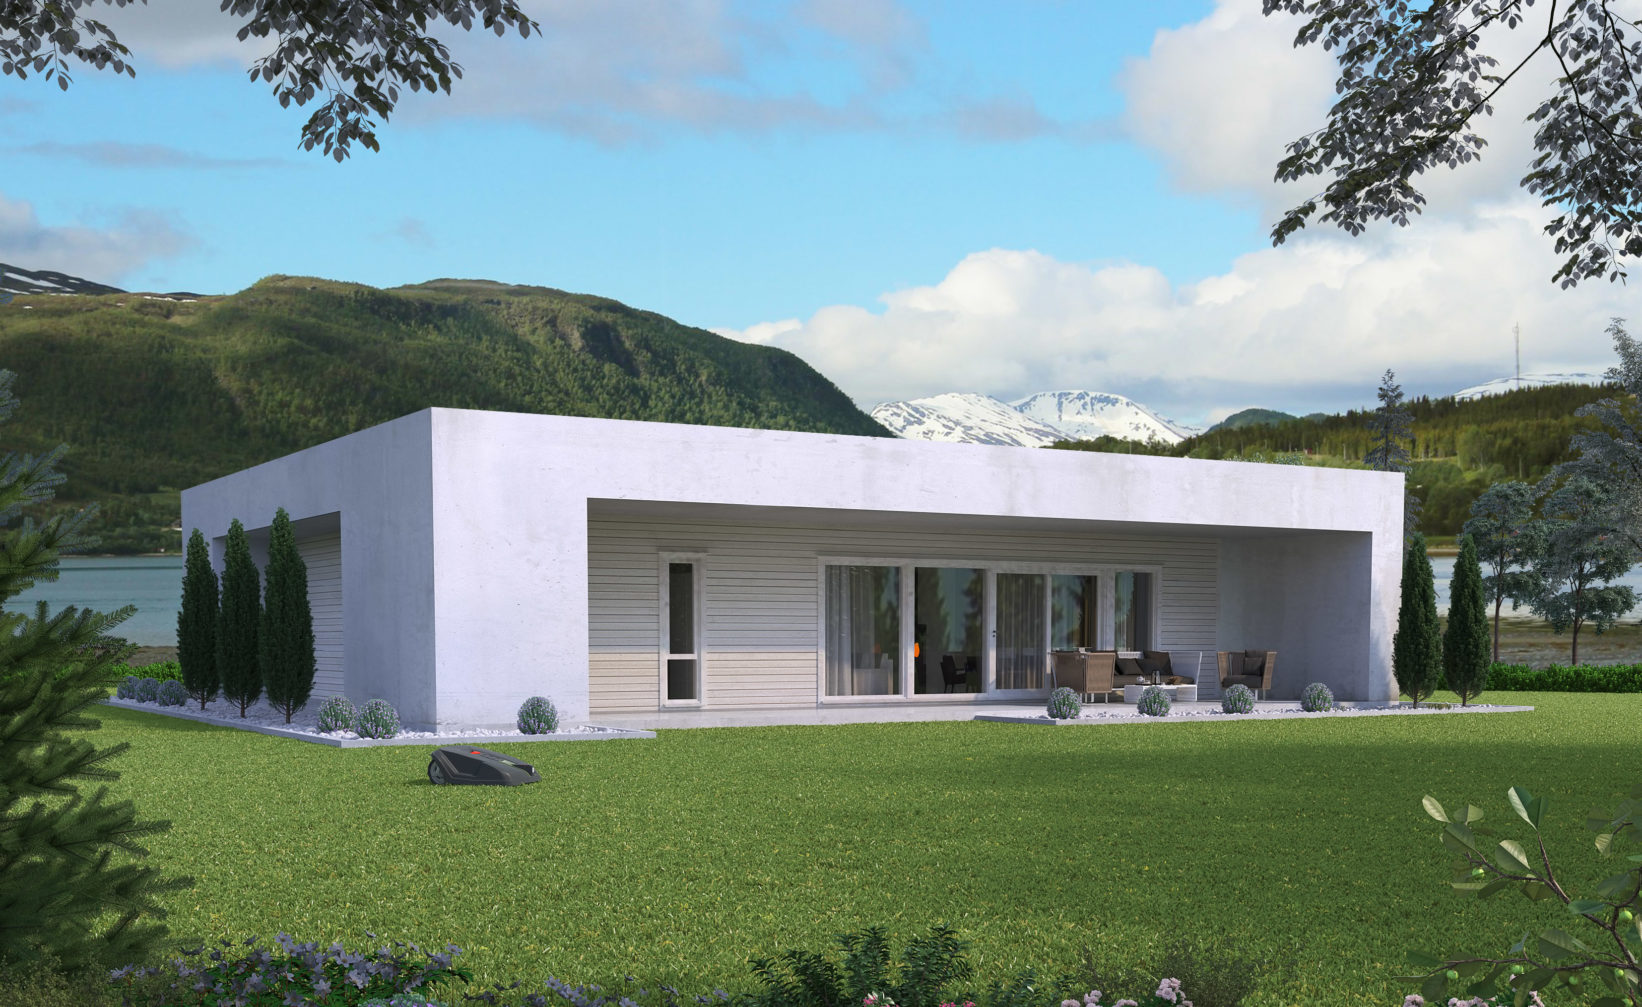 En visuell gjengivelse av Hus1, et hvitt hus som ligger på et grønt felt, laget i 2016 for salgsvisualisering.